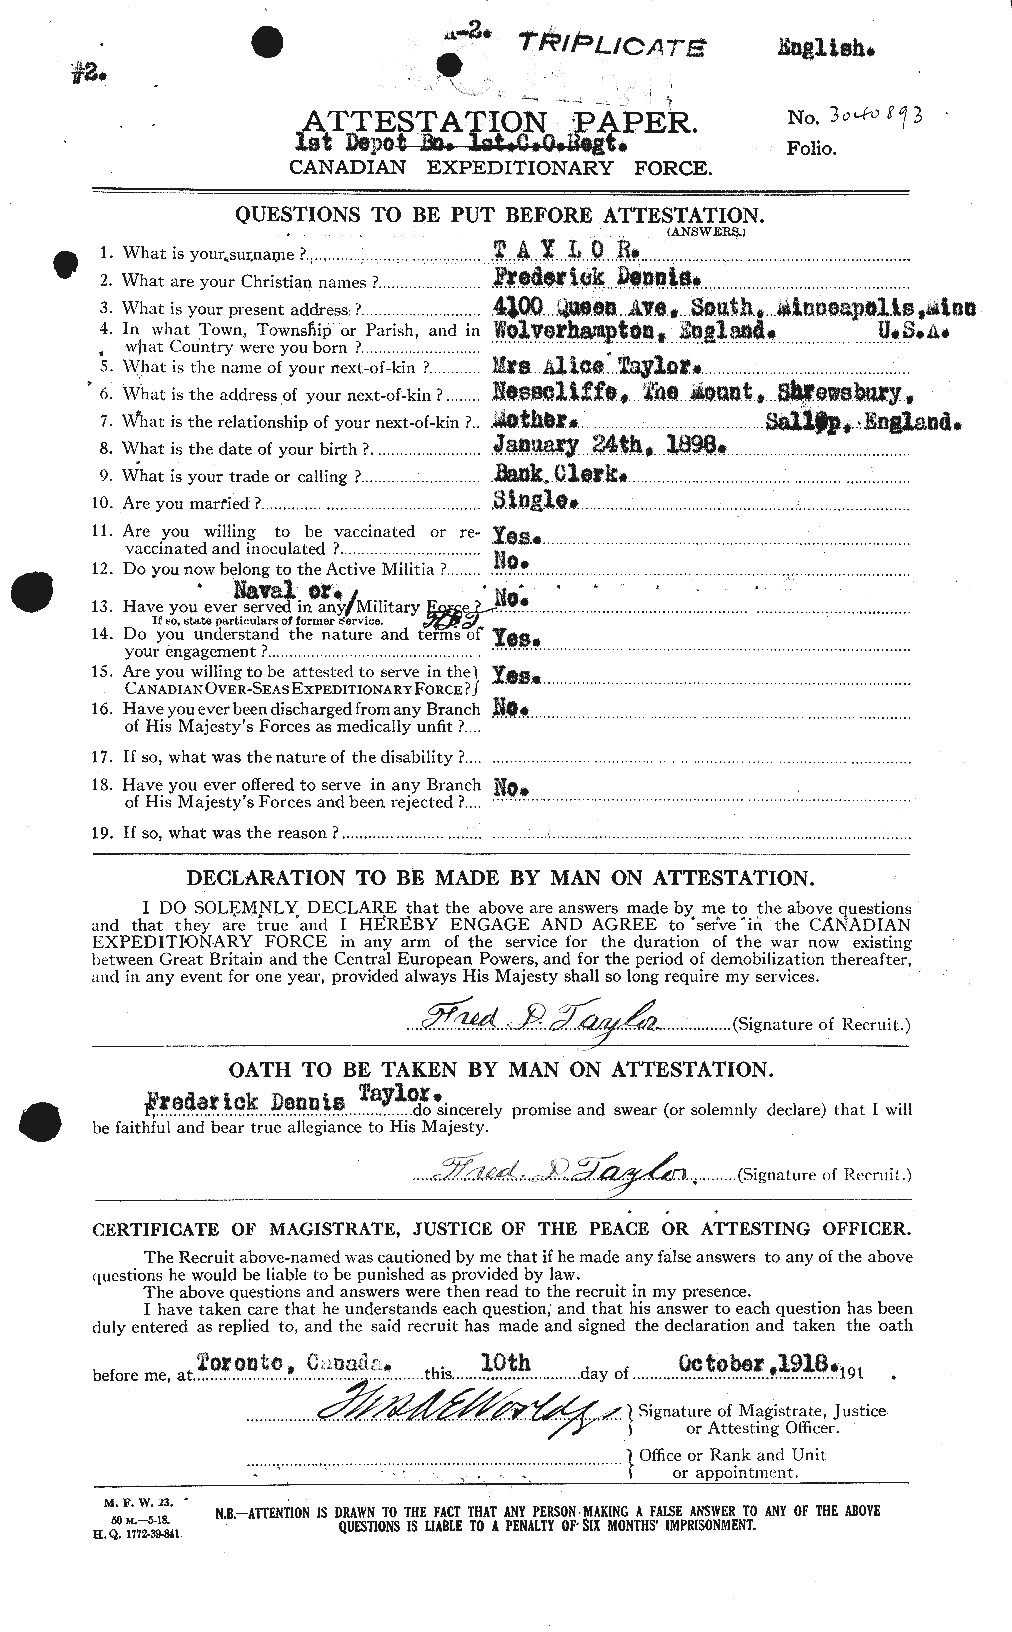 Dossiers du Personnel de la Première Guerre mondiale - CEC 625795a